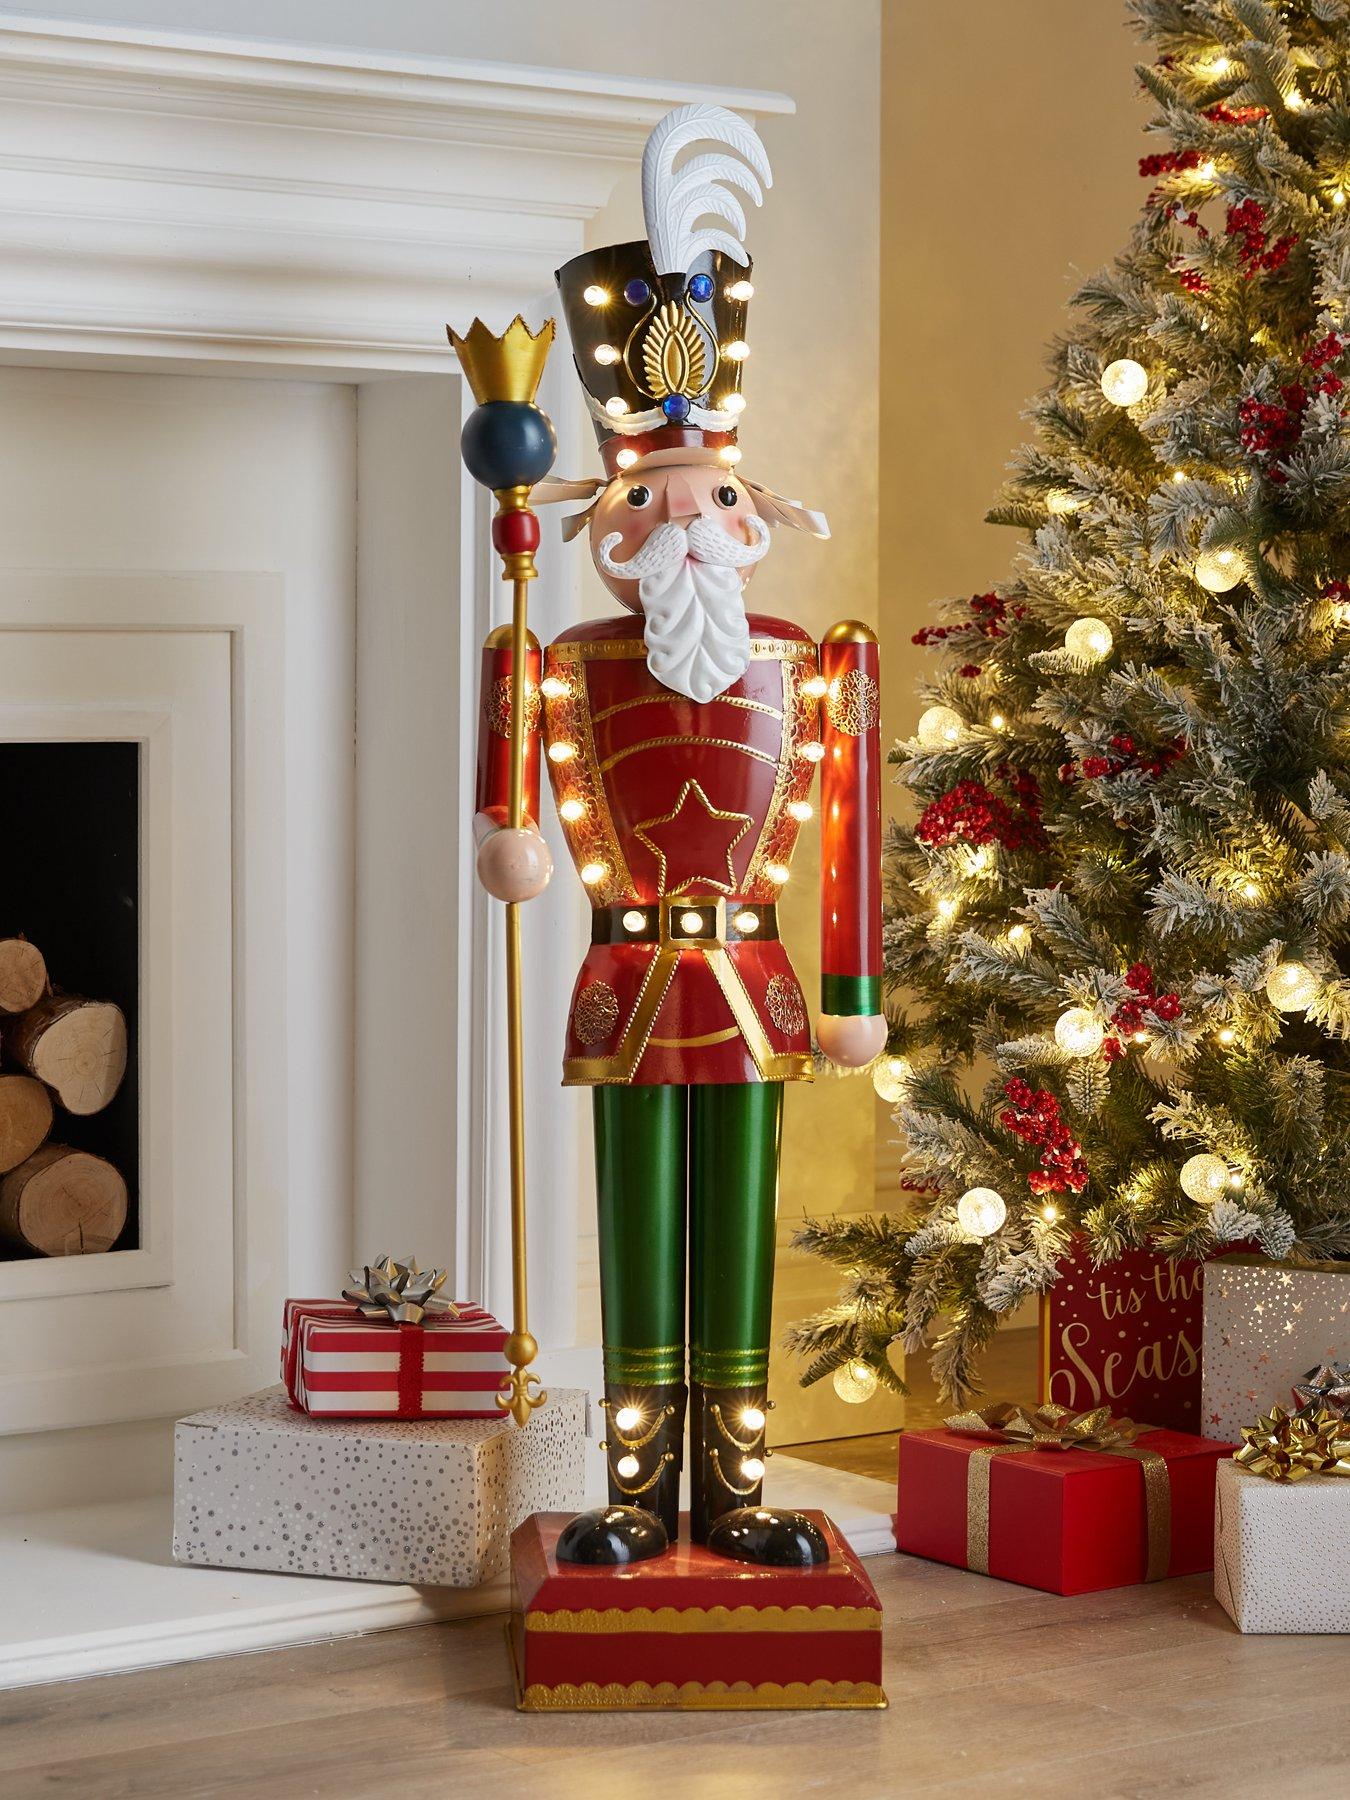 Three Kings 120 cm Lit Giant Christmas Nutcracker - Traditional